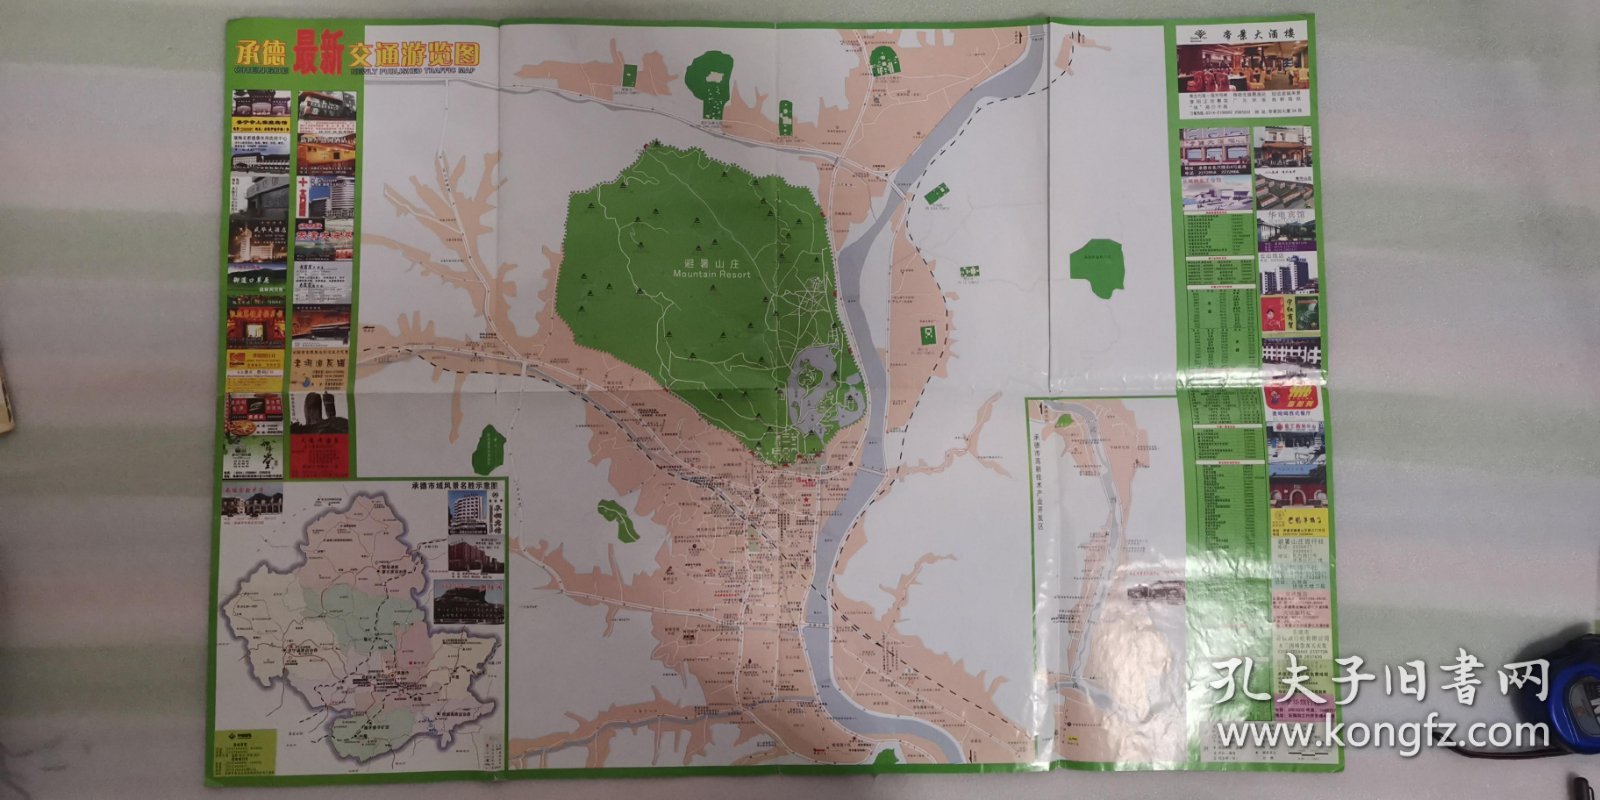 地图《承德.最新交通游览图》2004年4月第一版，第一次印刷；河北省制图院 编制；尺寸52×76厘米